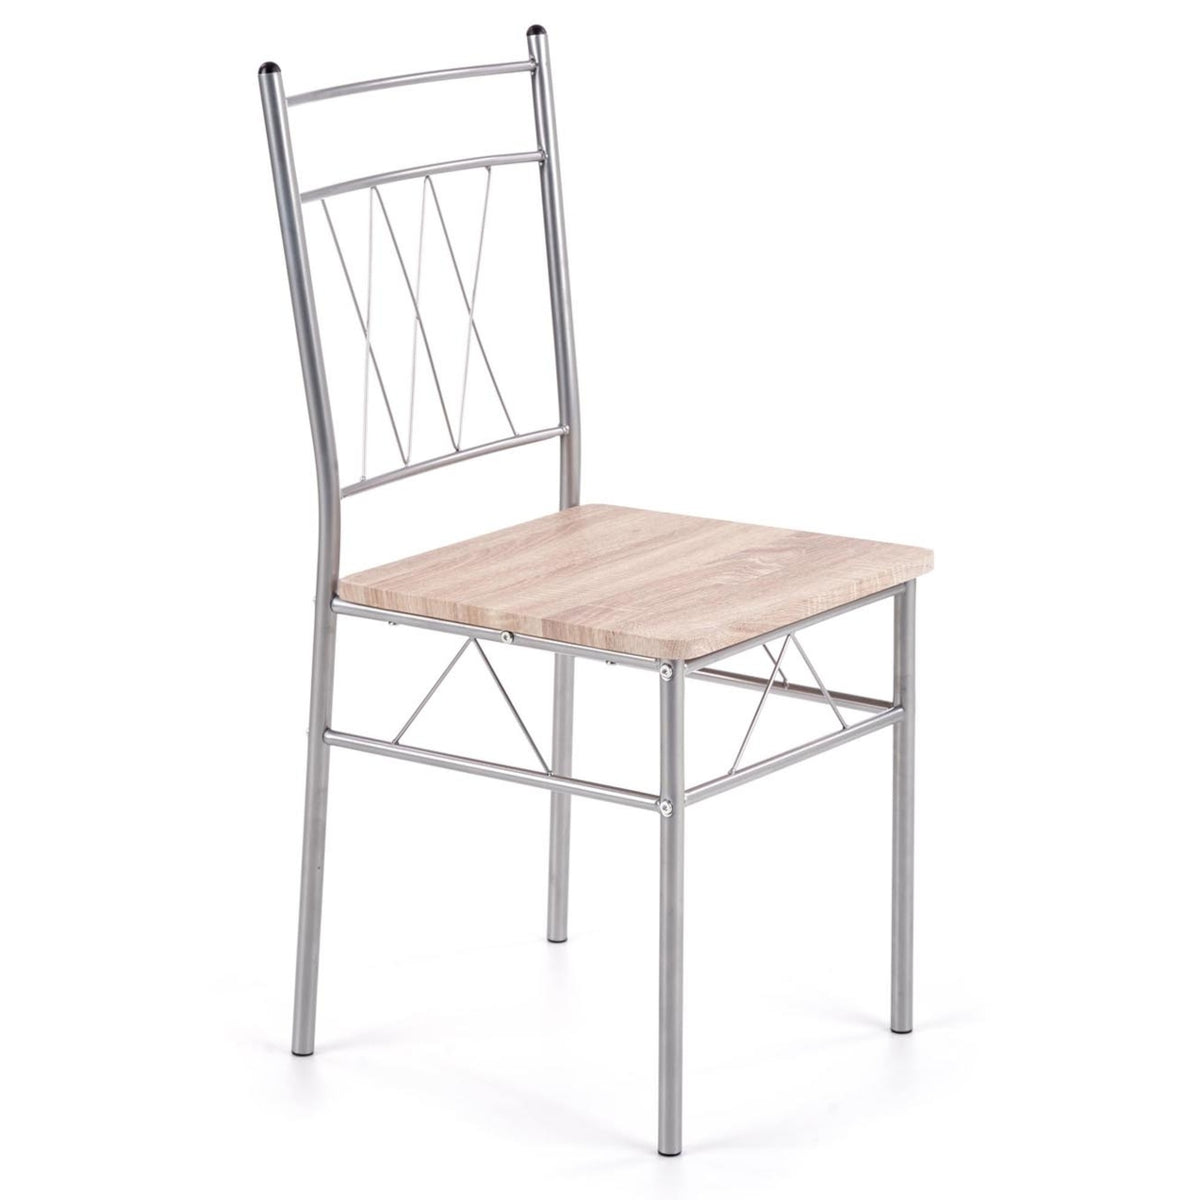 Jídelní set Marslo - 2x židle, 1x stůl (dub sonoma)